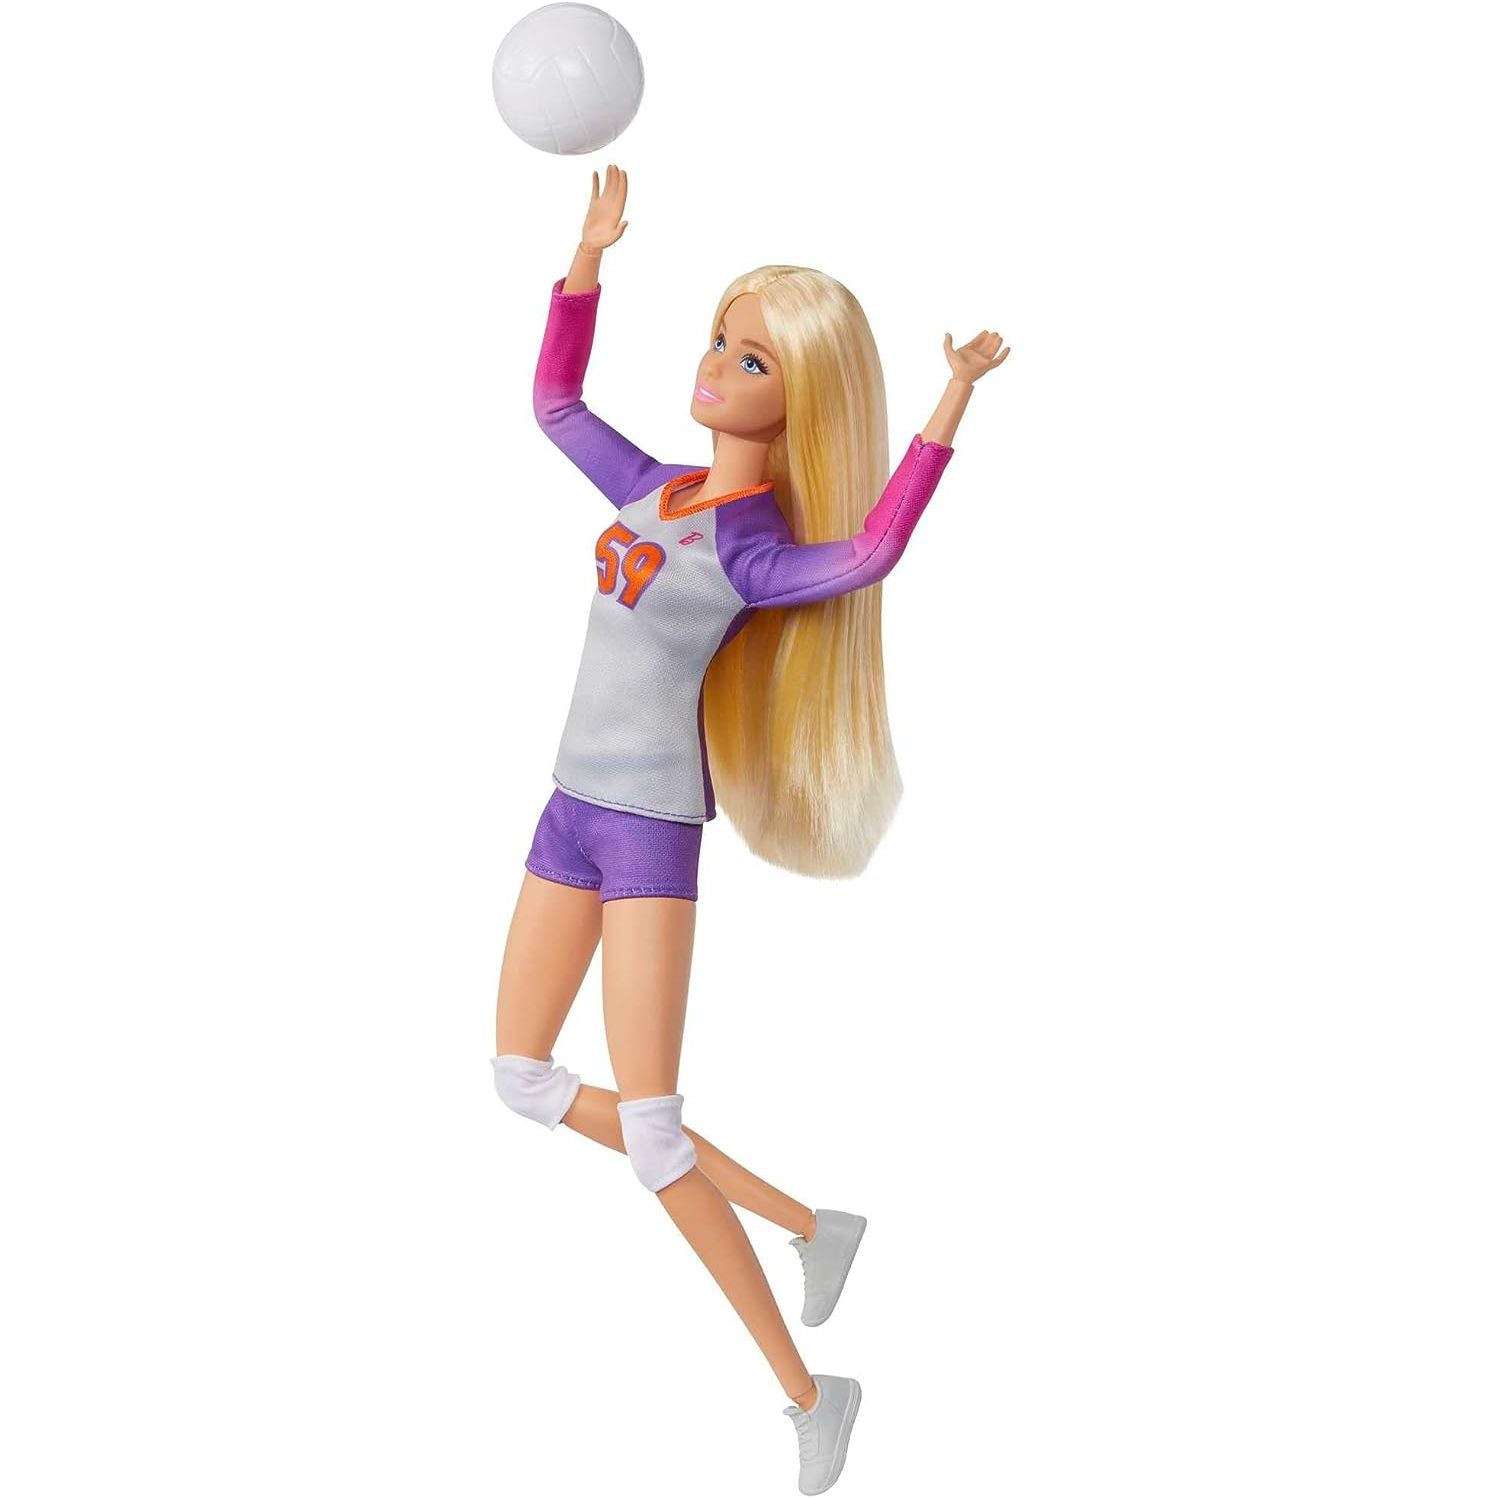 دمية باربي وإكسسواراتها، دمية لاعبة كرة طائرة مصممة للتحرك مع الزي الرسمي والكرة